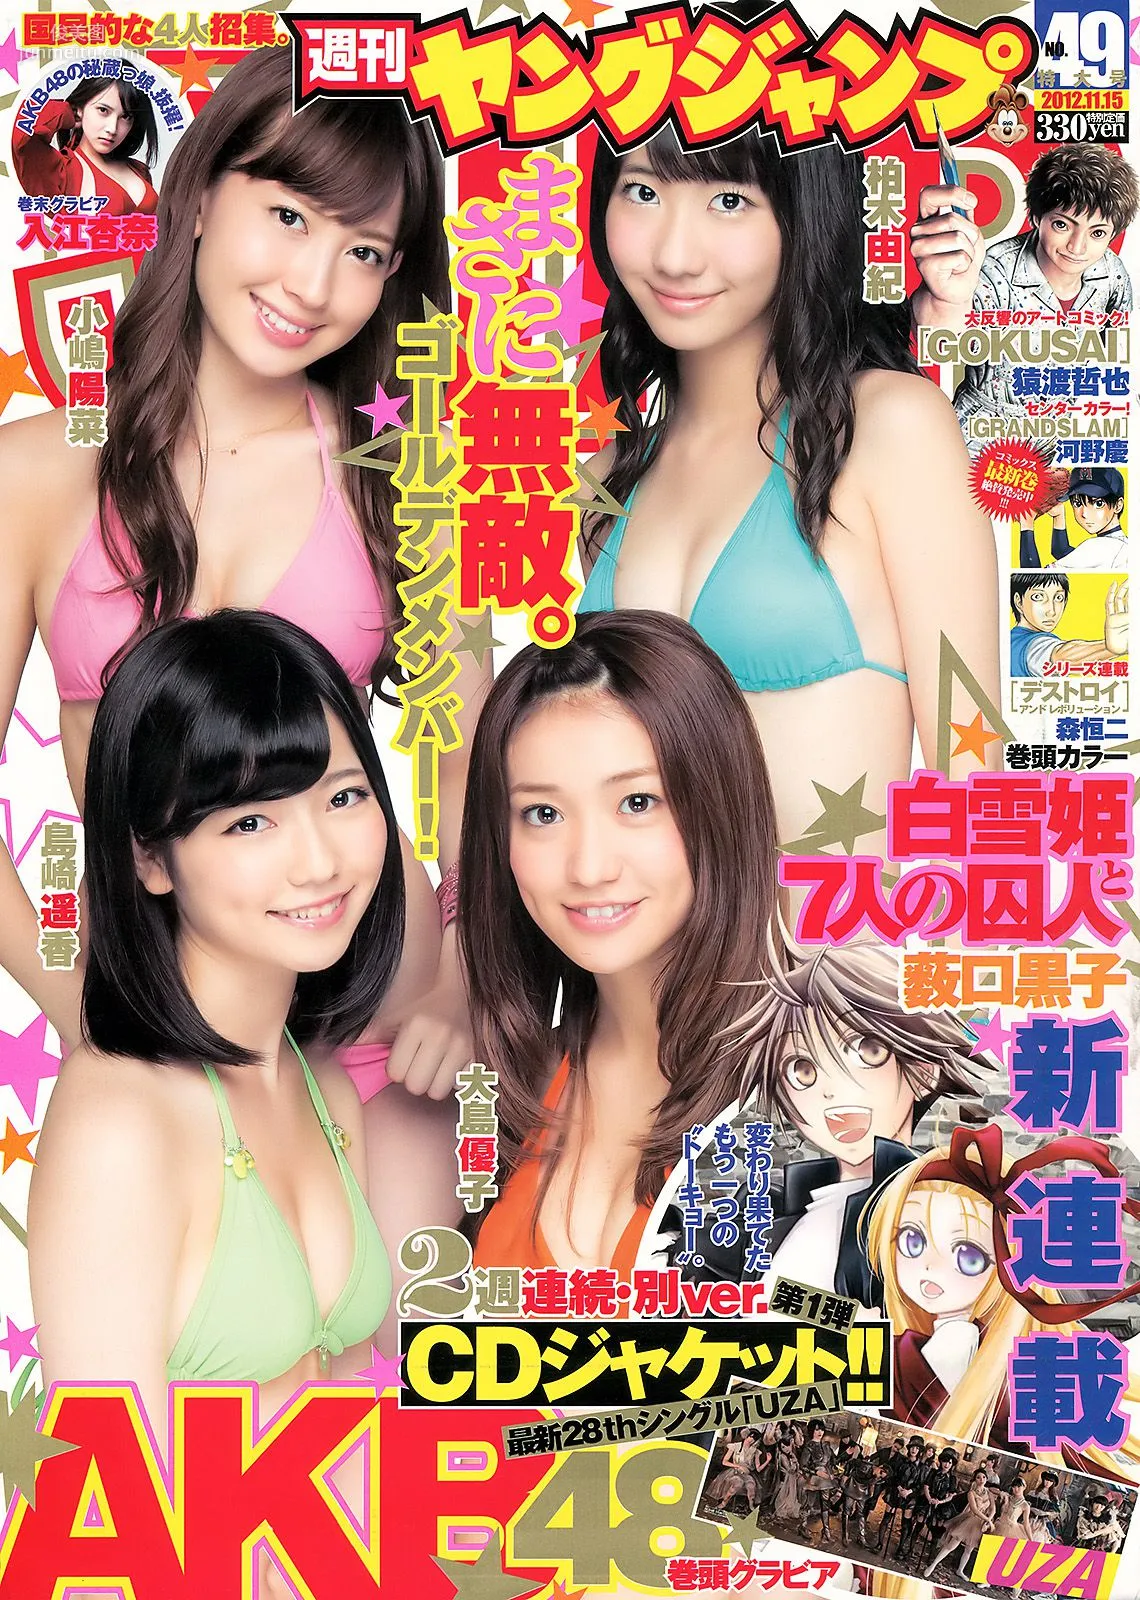 AKB48 入山杏奈 [週刊ヤングジャンプ] 2012年No.49 写真杂志1